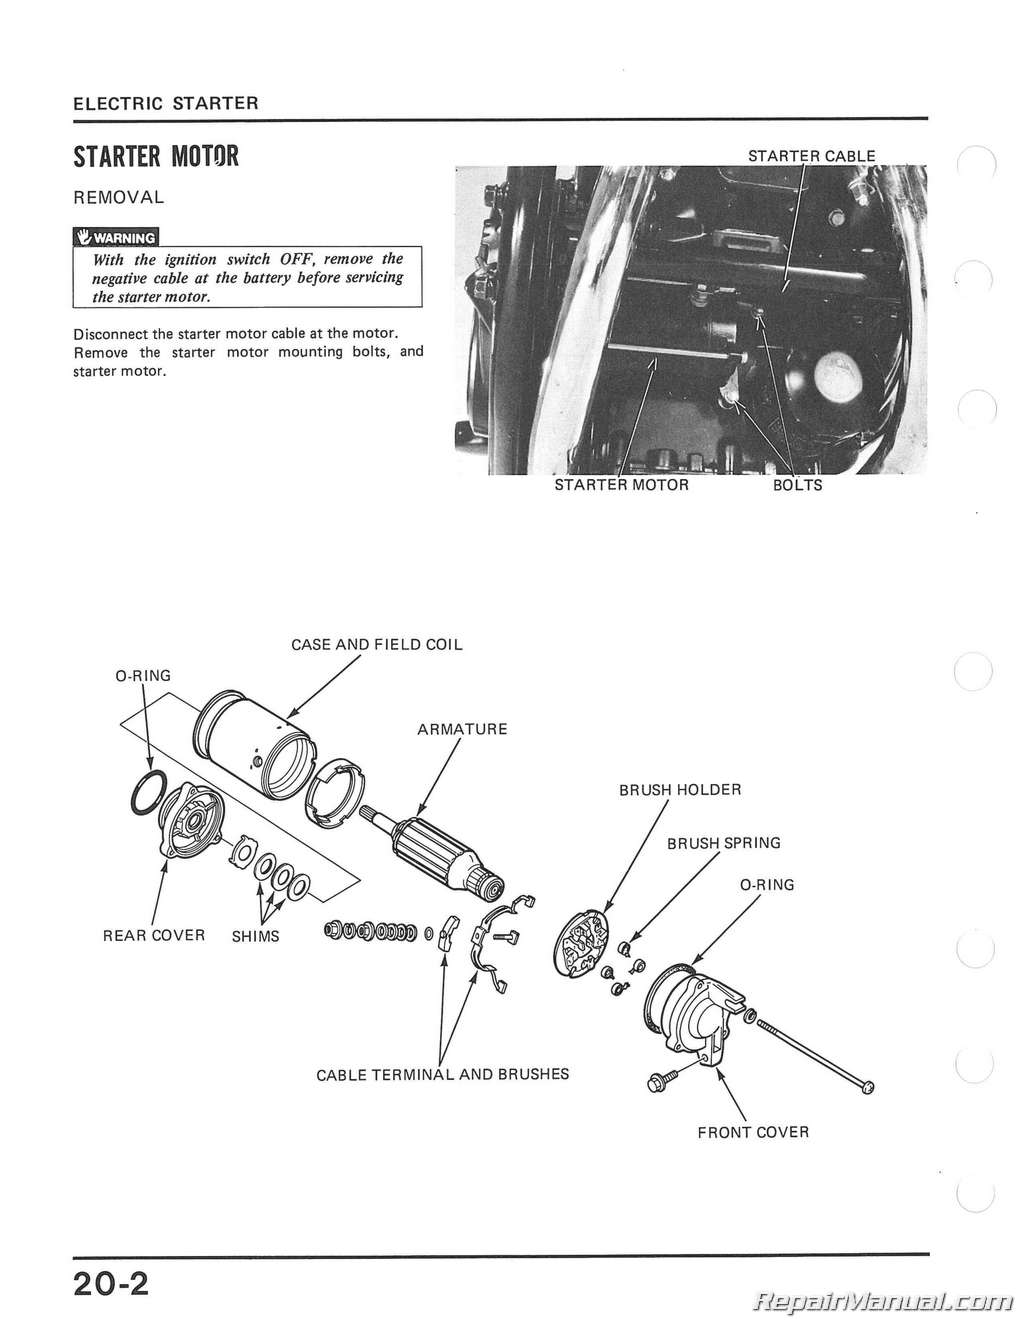 1982 Honda sabre owners manual #2